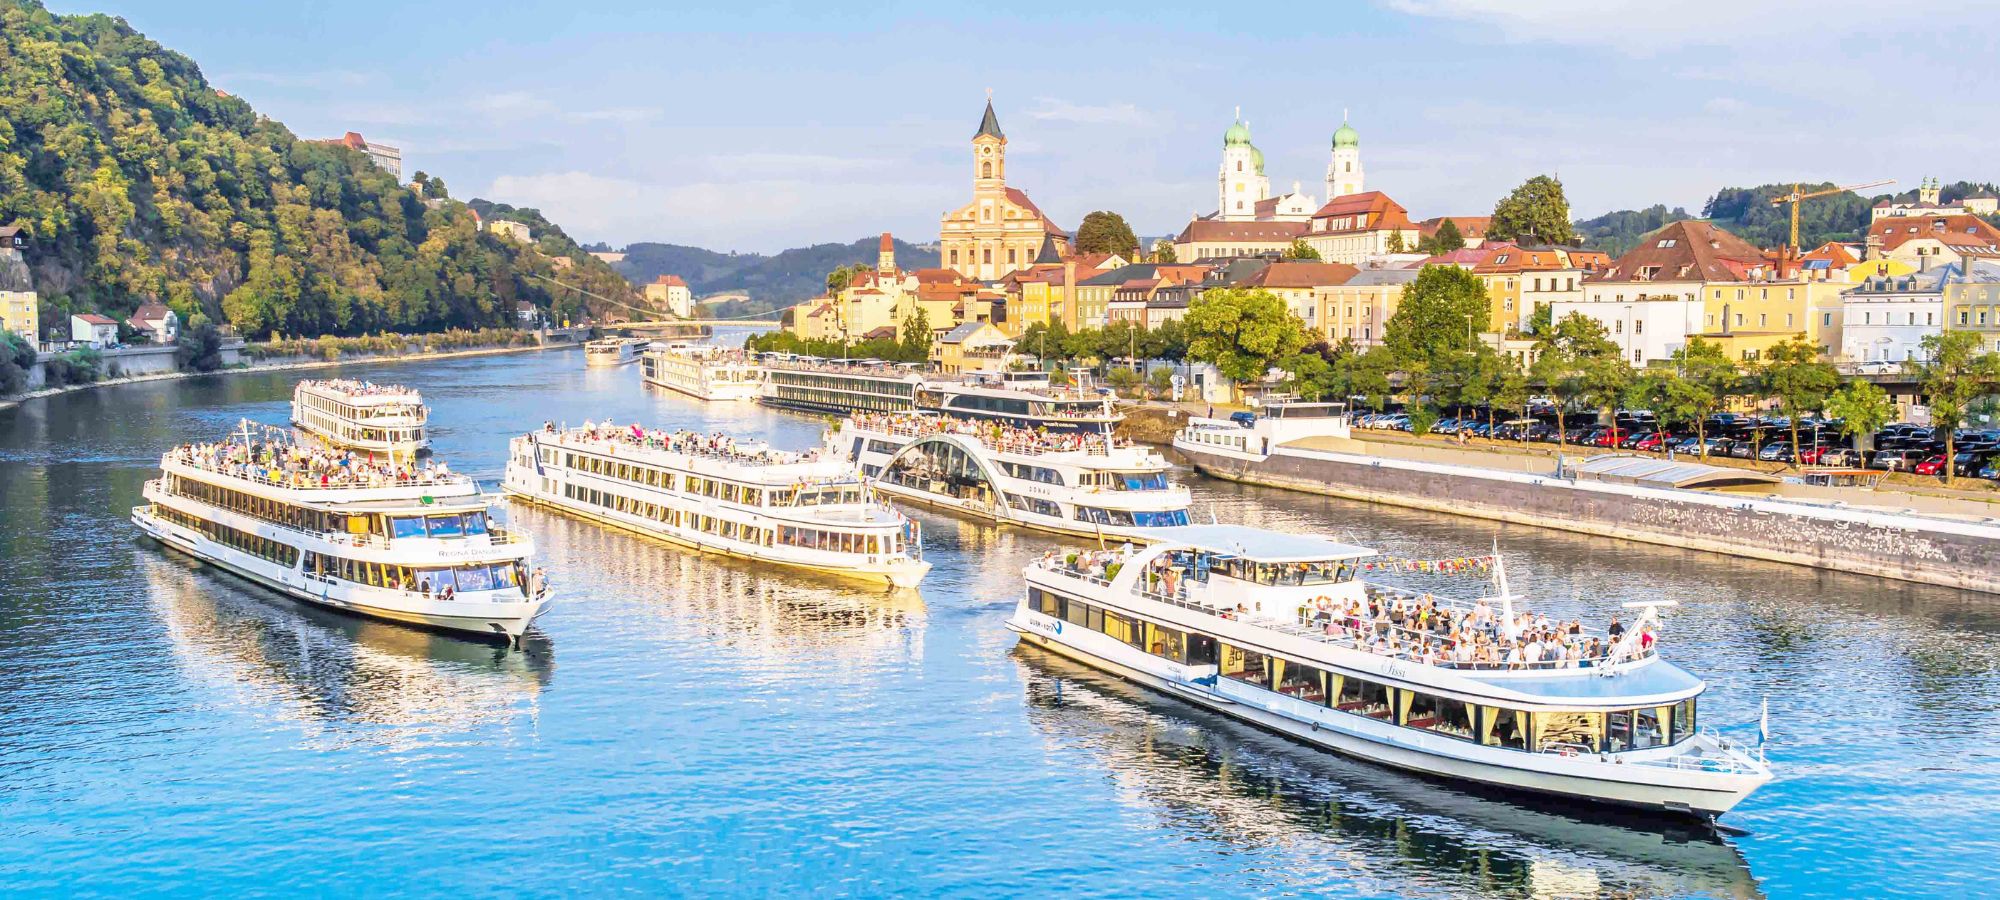 Donauschifffahrt in Passau